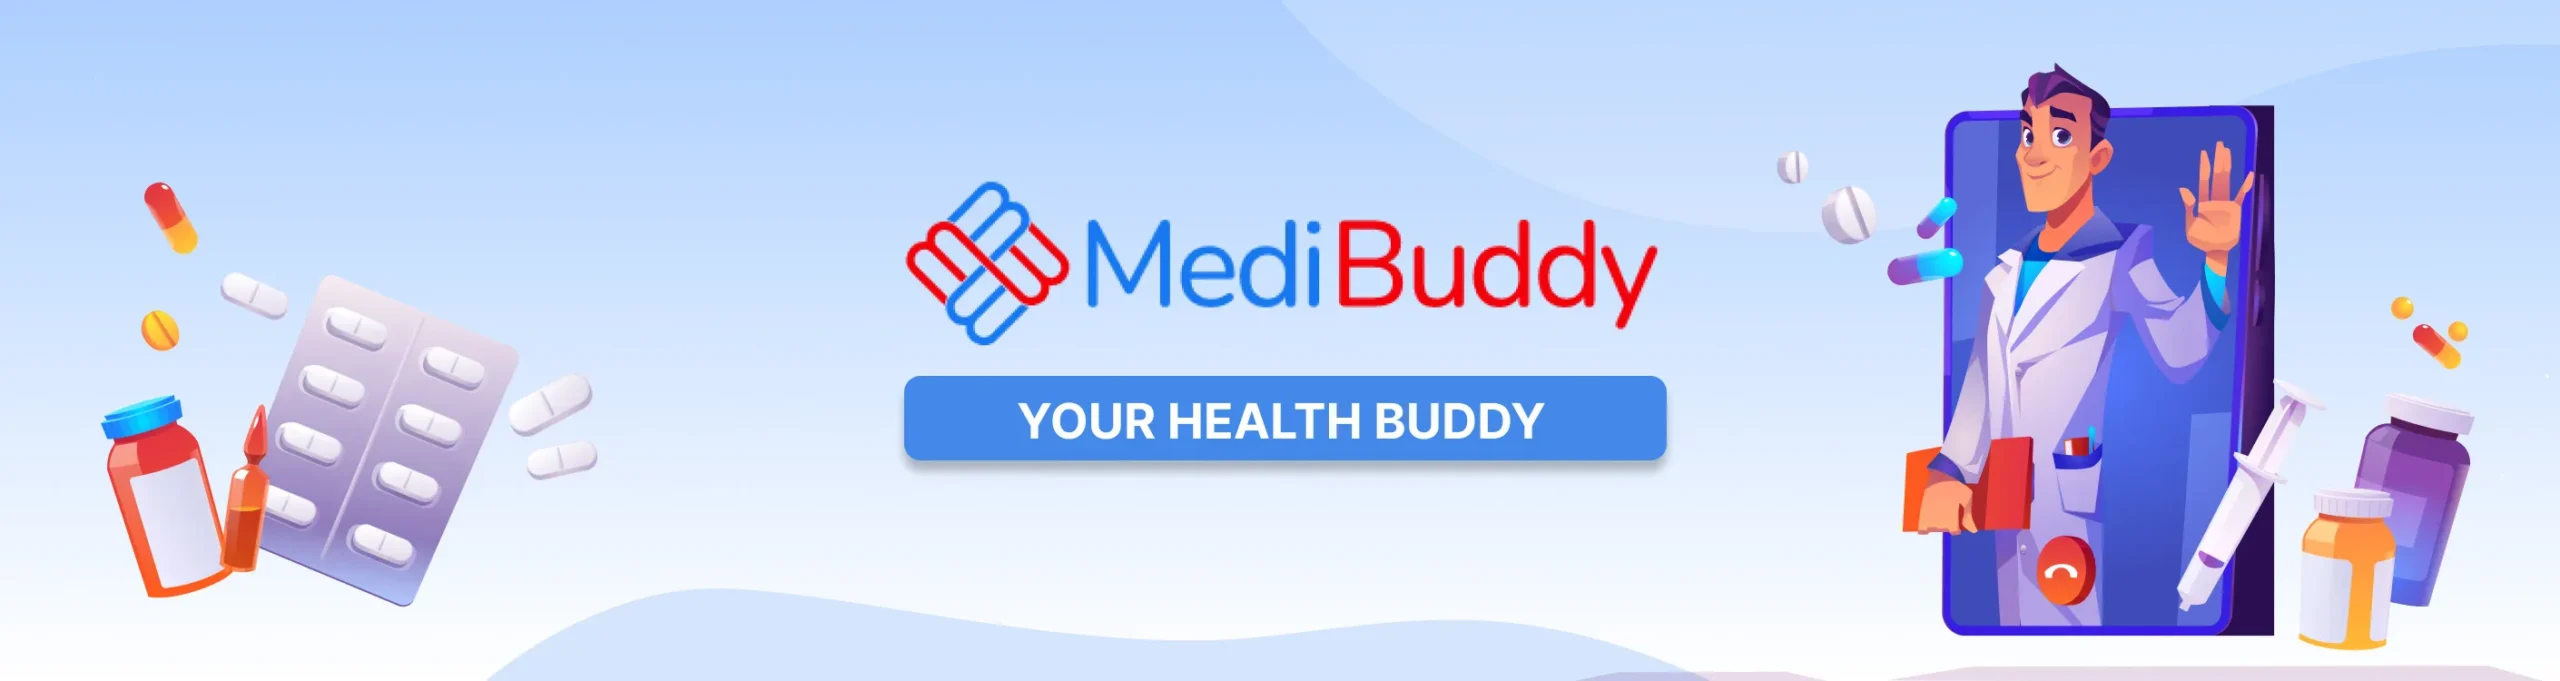 Medi Buddy Banner